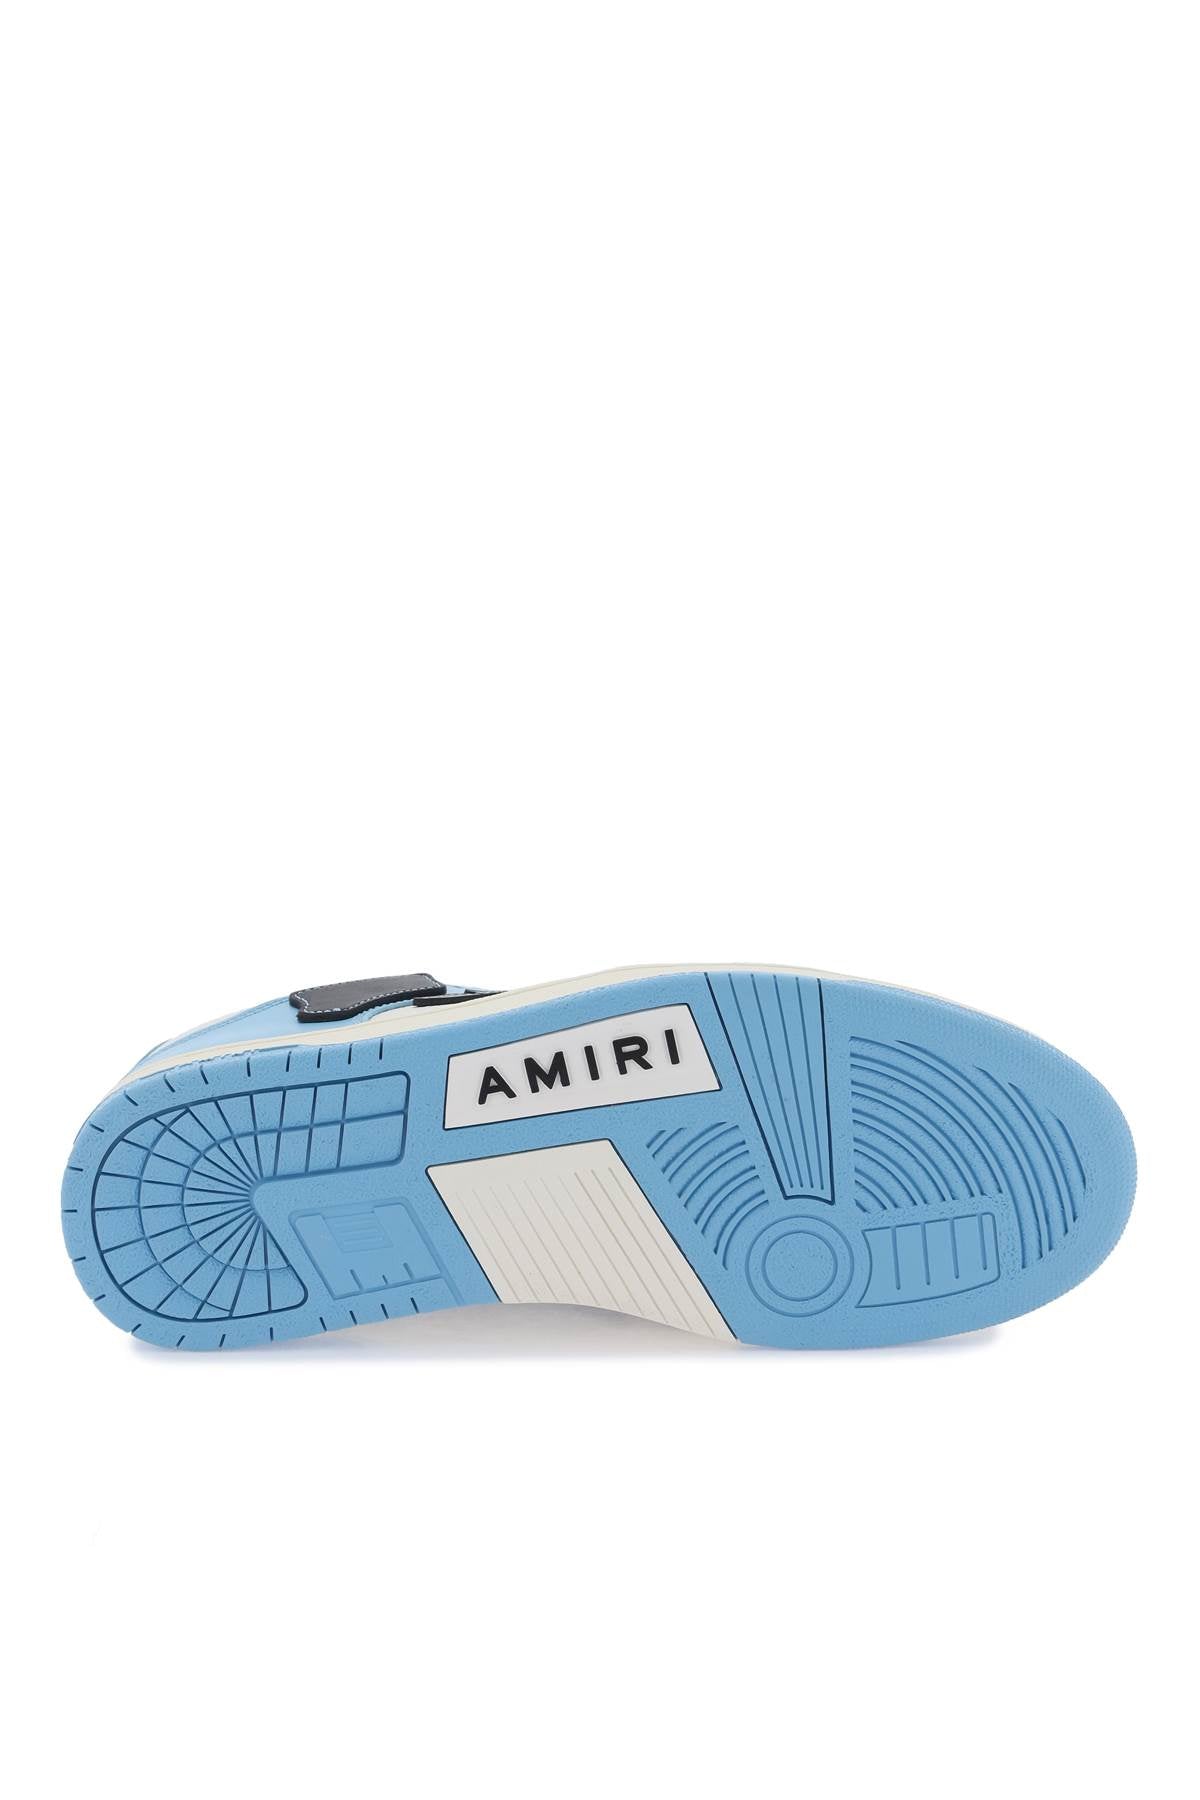 Shop Amiri Skel Top Low Sneakers In White, Black, Light Blue